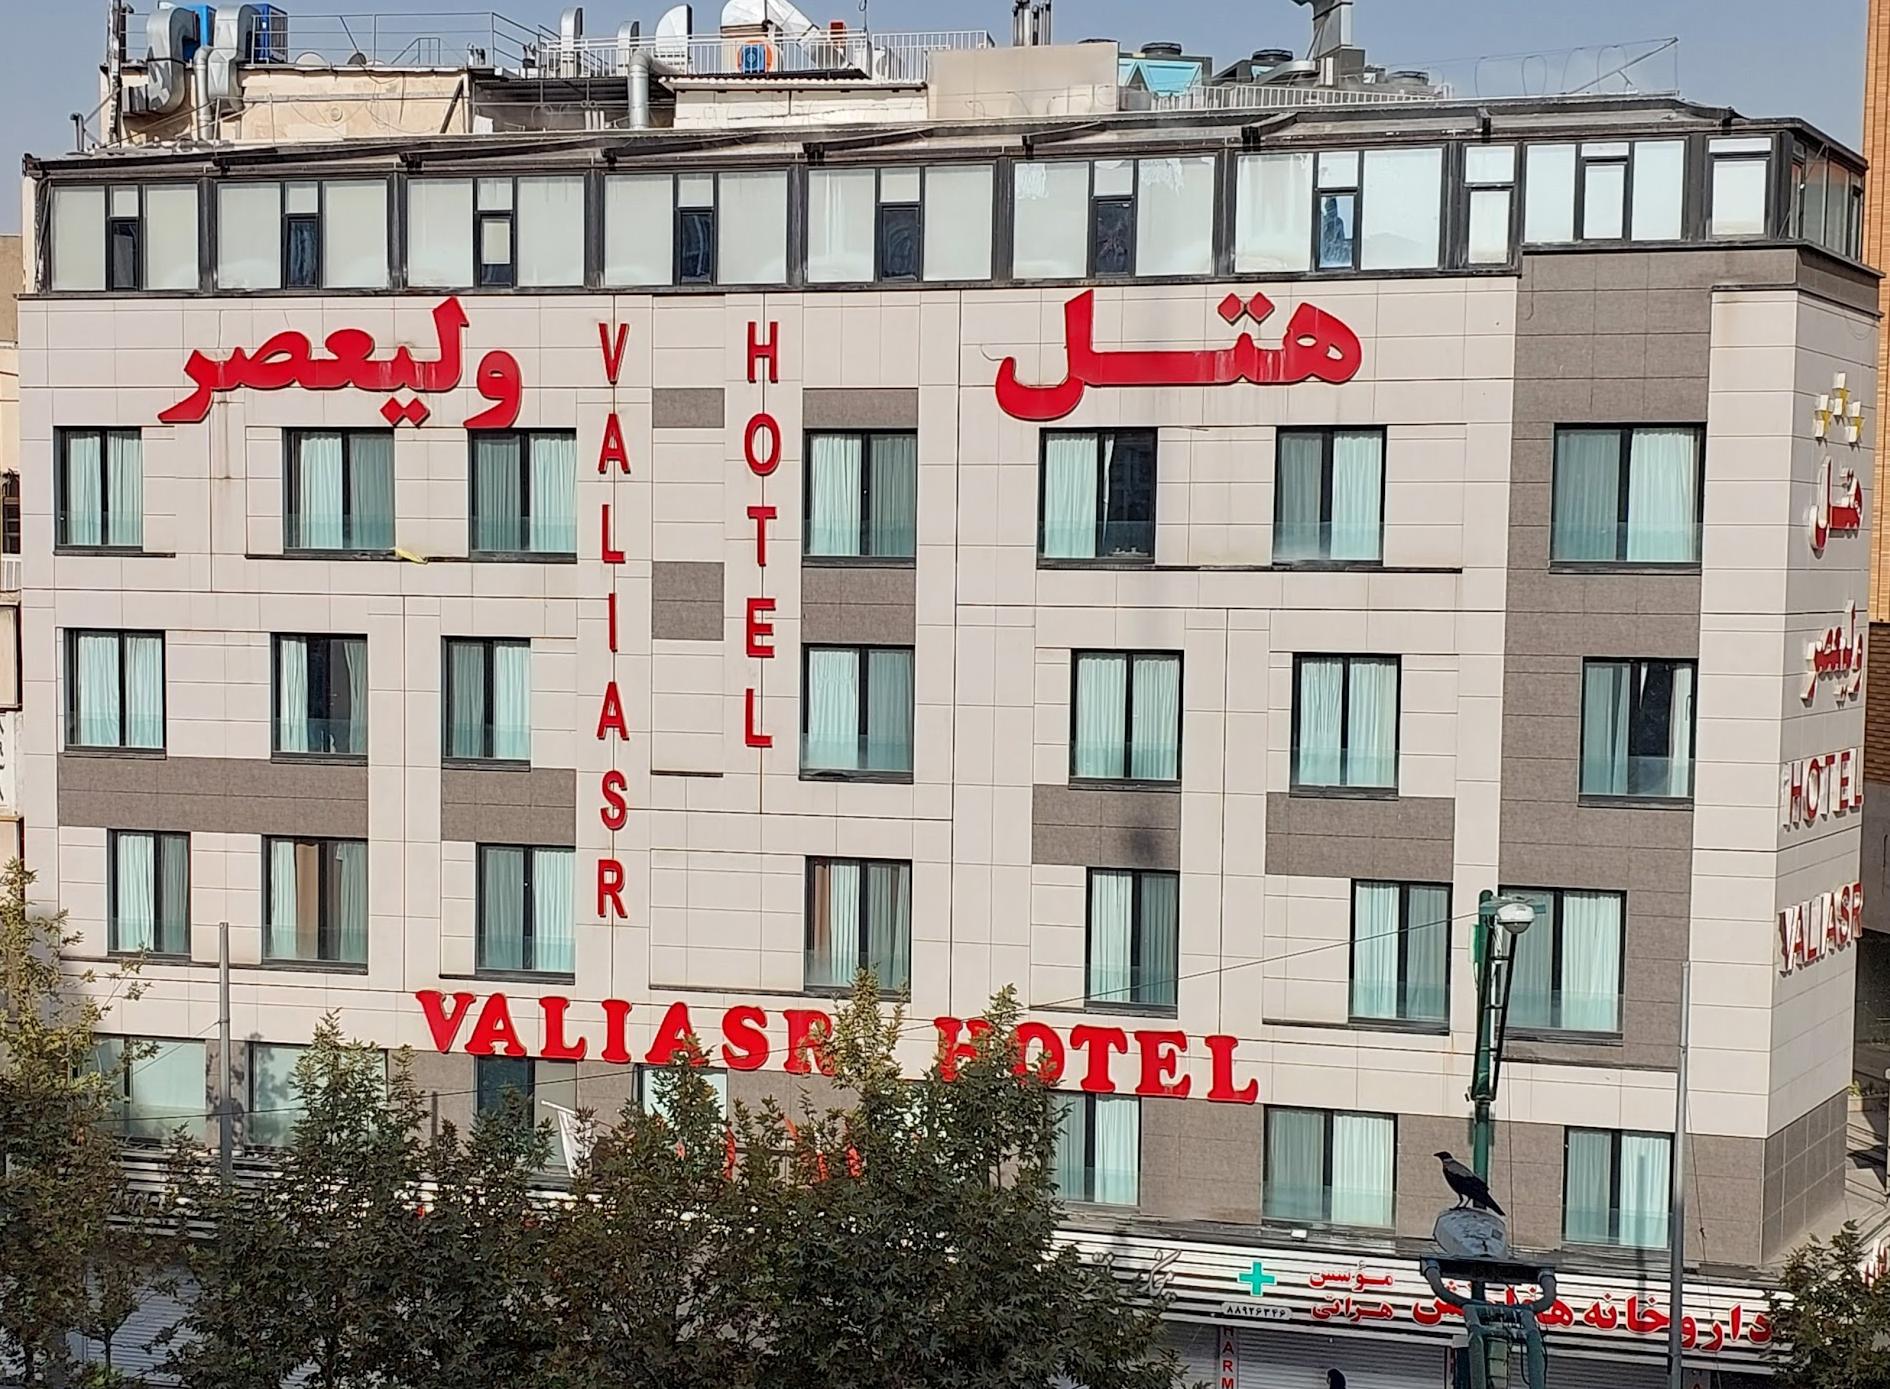 Valiasr Hotel